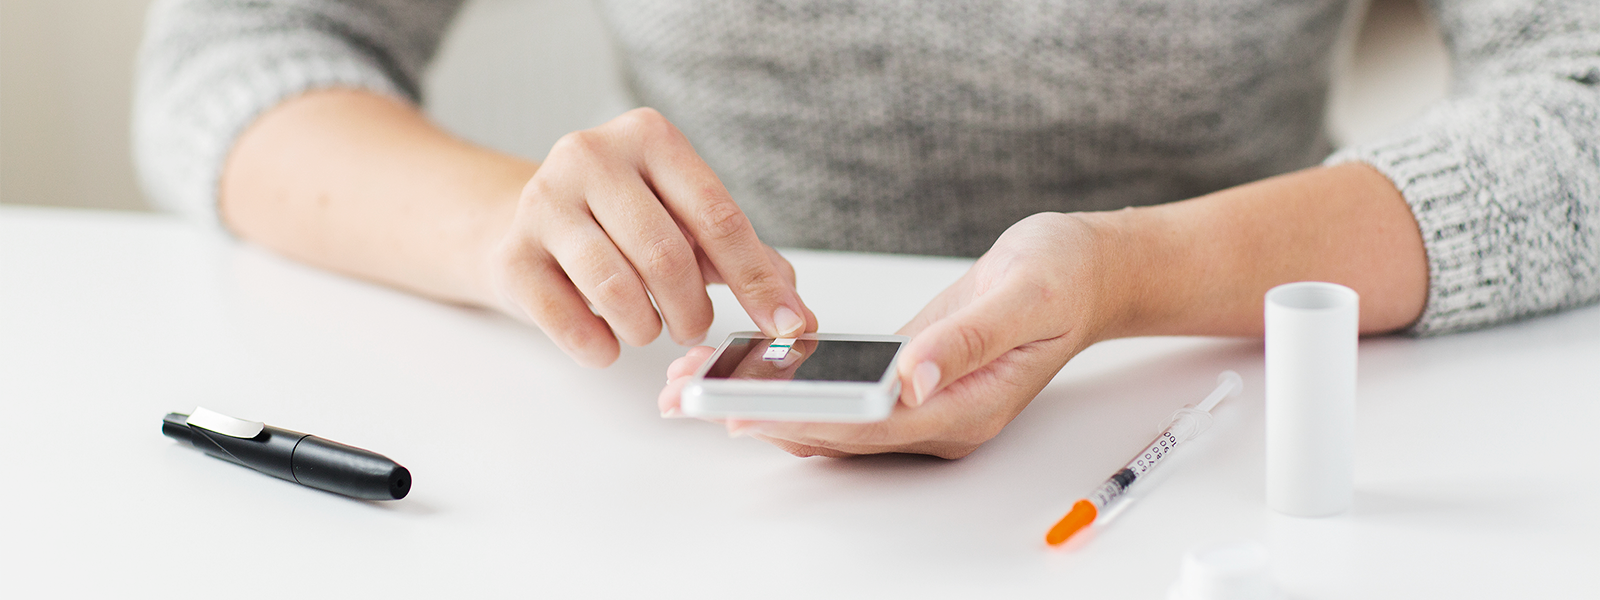 Las aplicaciones en teléfonos inteligentes, facilitan el intercambio de información para mejorar el automanejo de la diabetes.